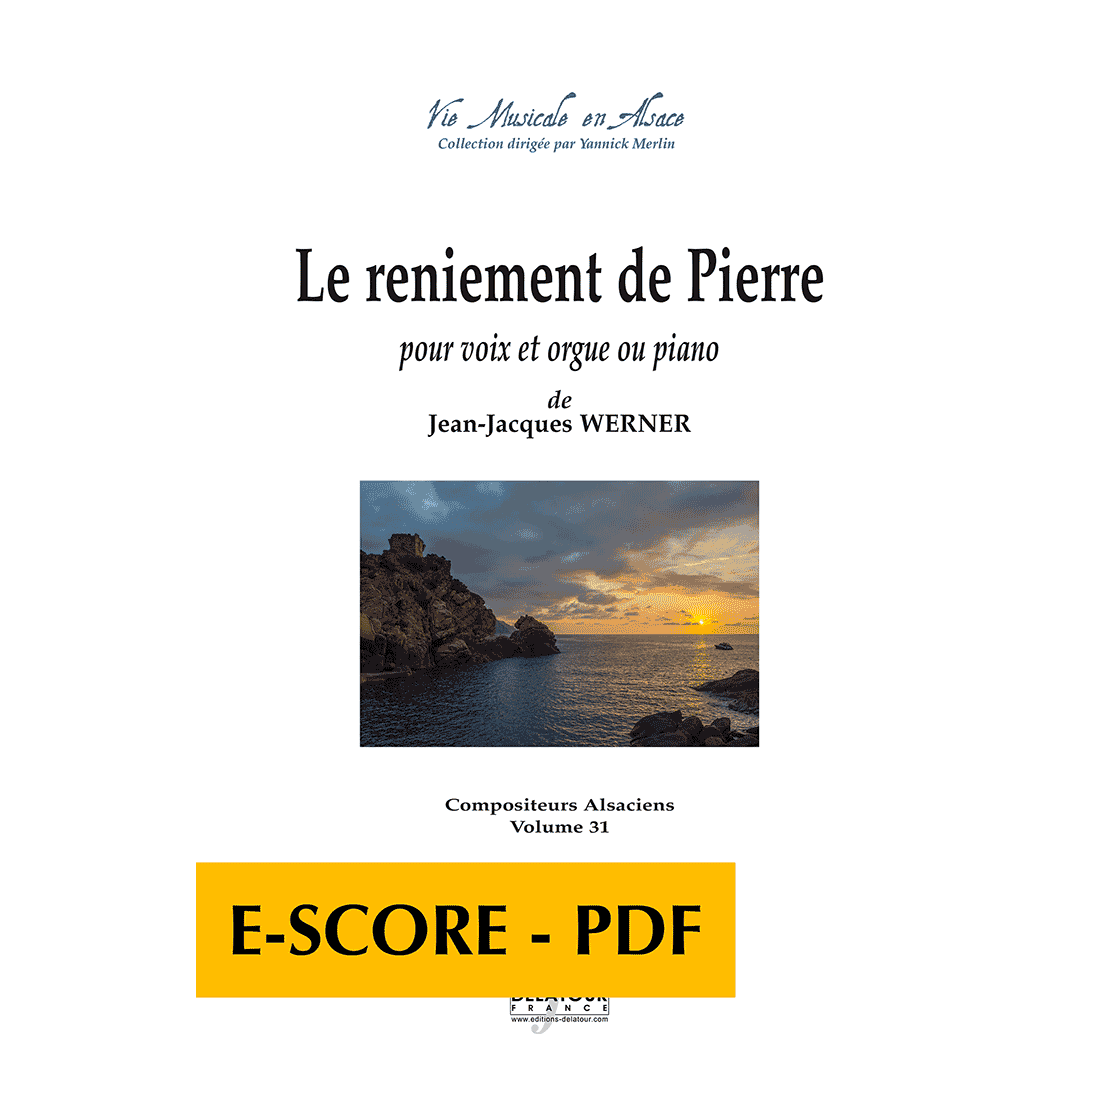 Le reniement de Pierre für Stimme und Orgel oder Klavier -E-score PDF